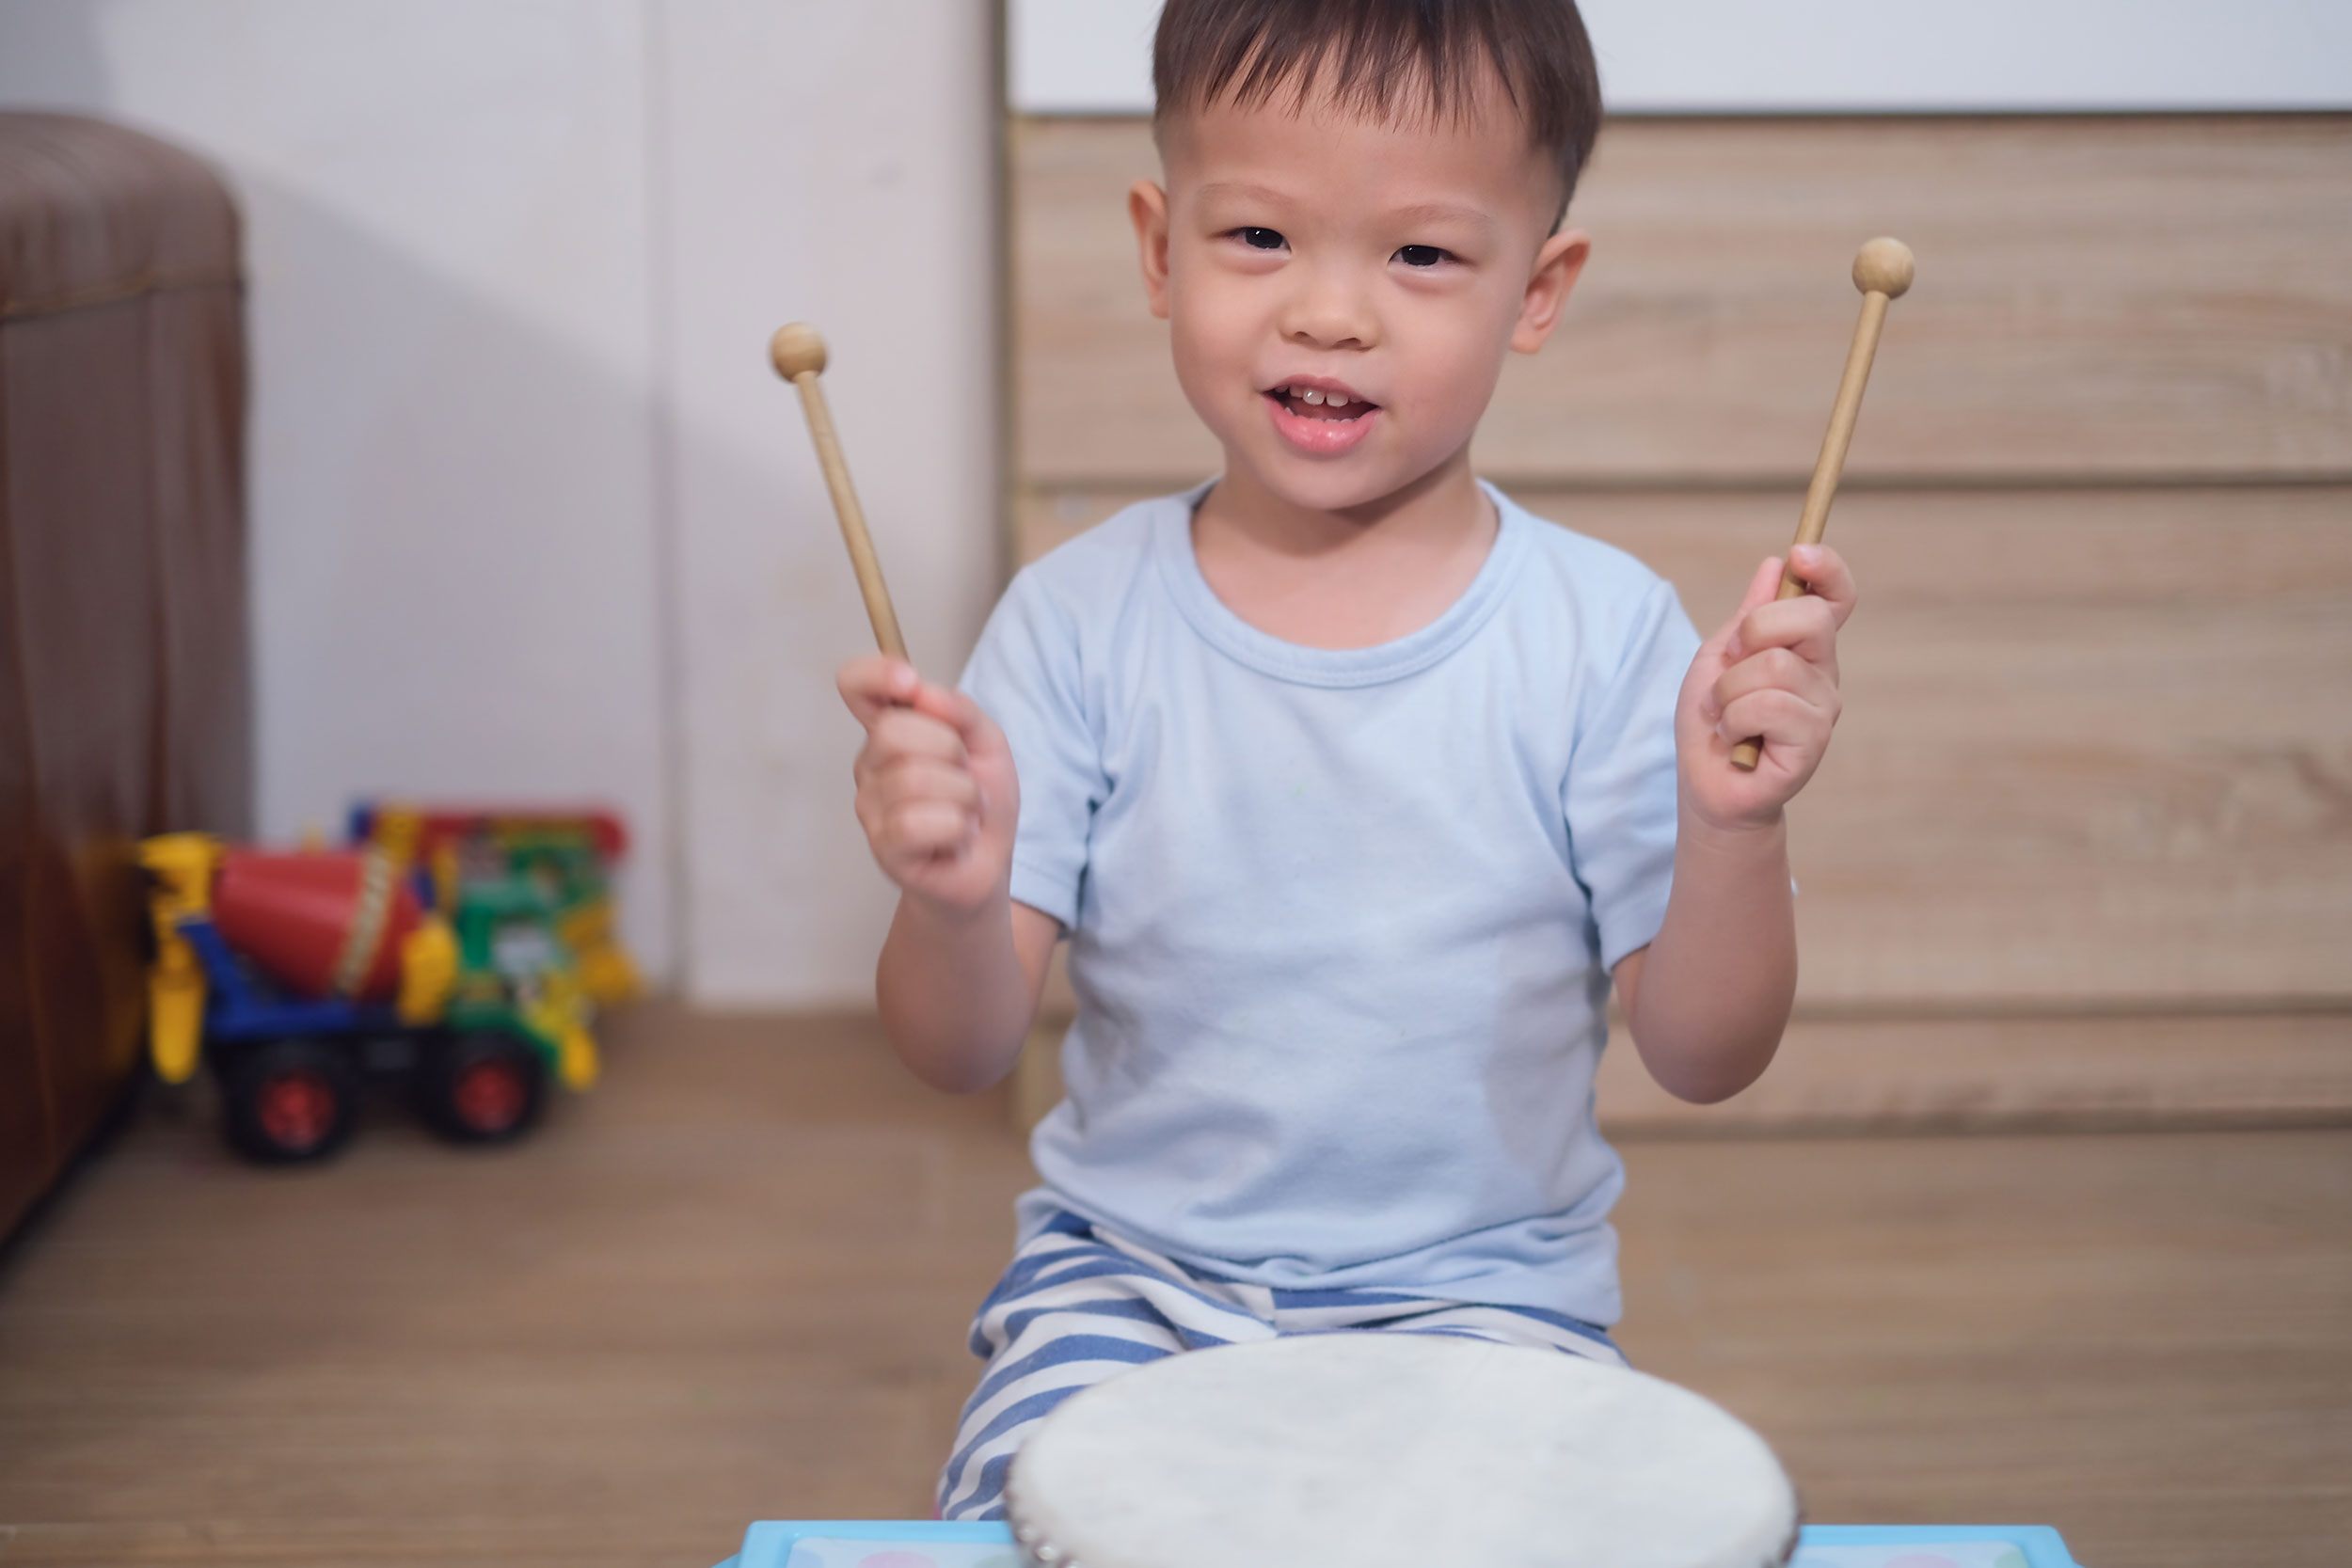 Ajak si kecil menyanyikan lagu favoritnya dengan diiringi tabuhan drum buatan sendiri, Bu!